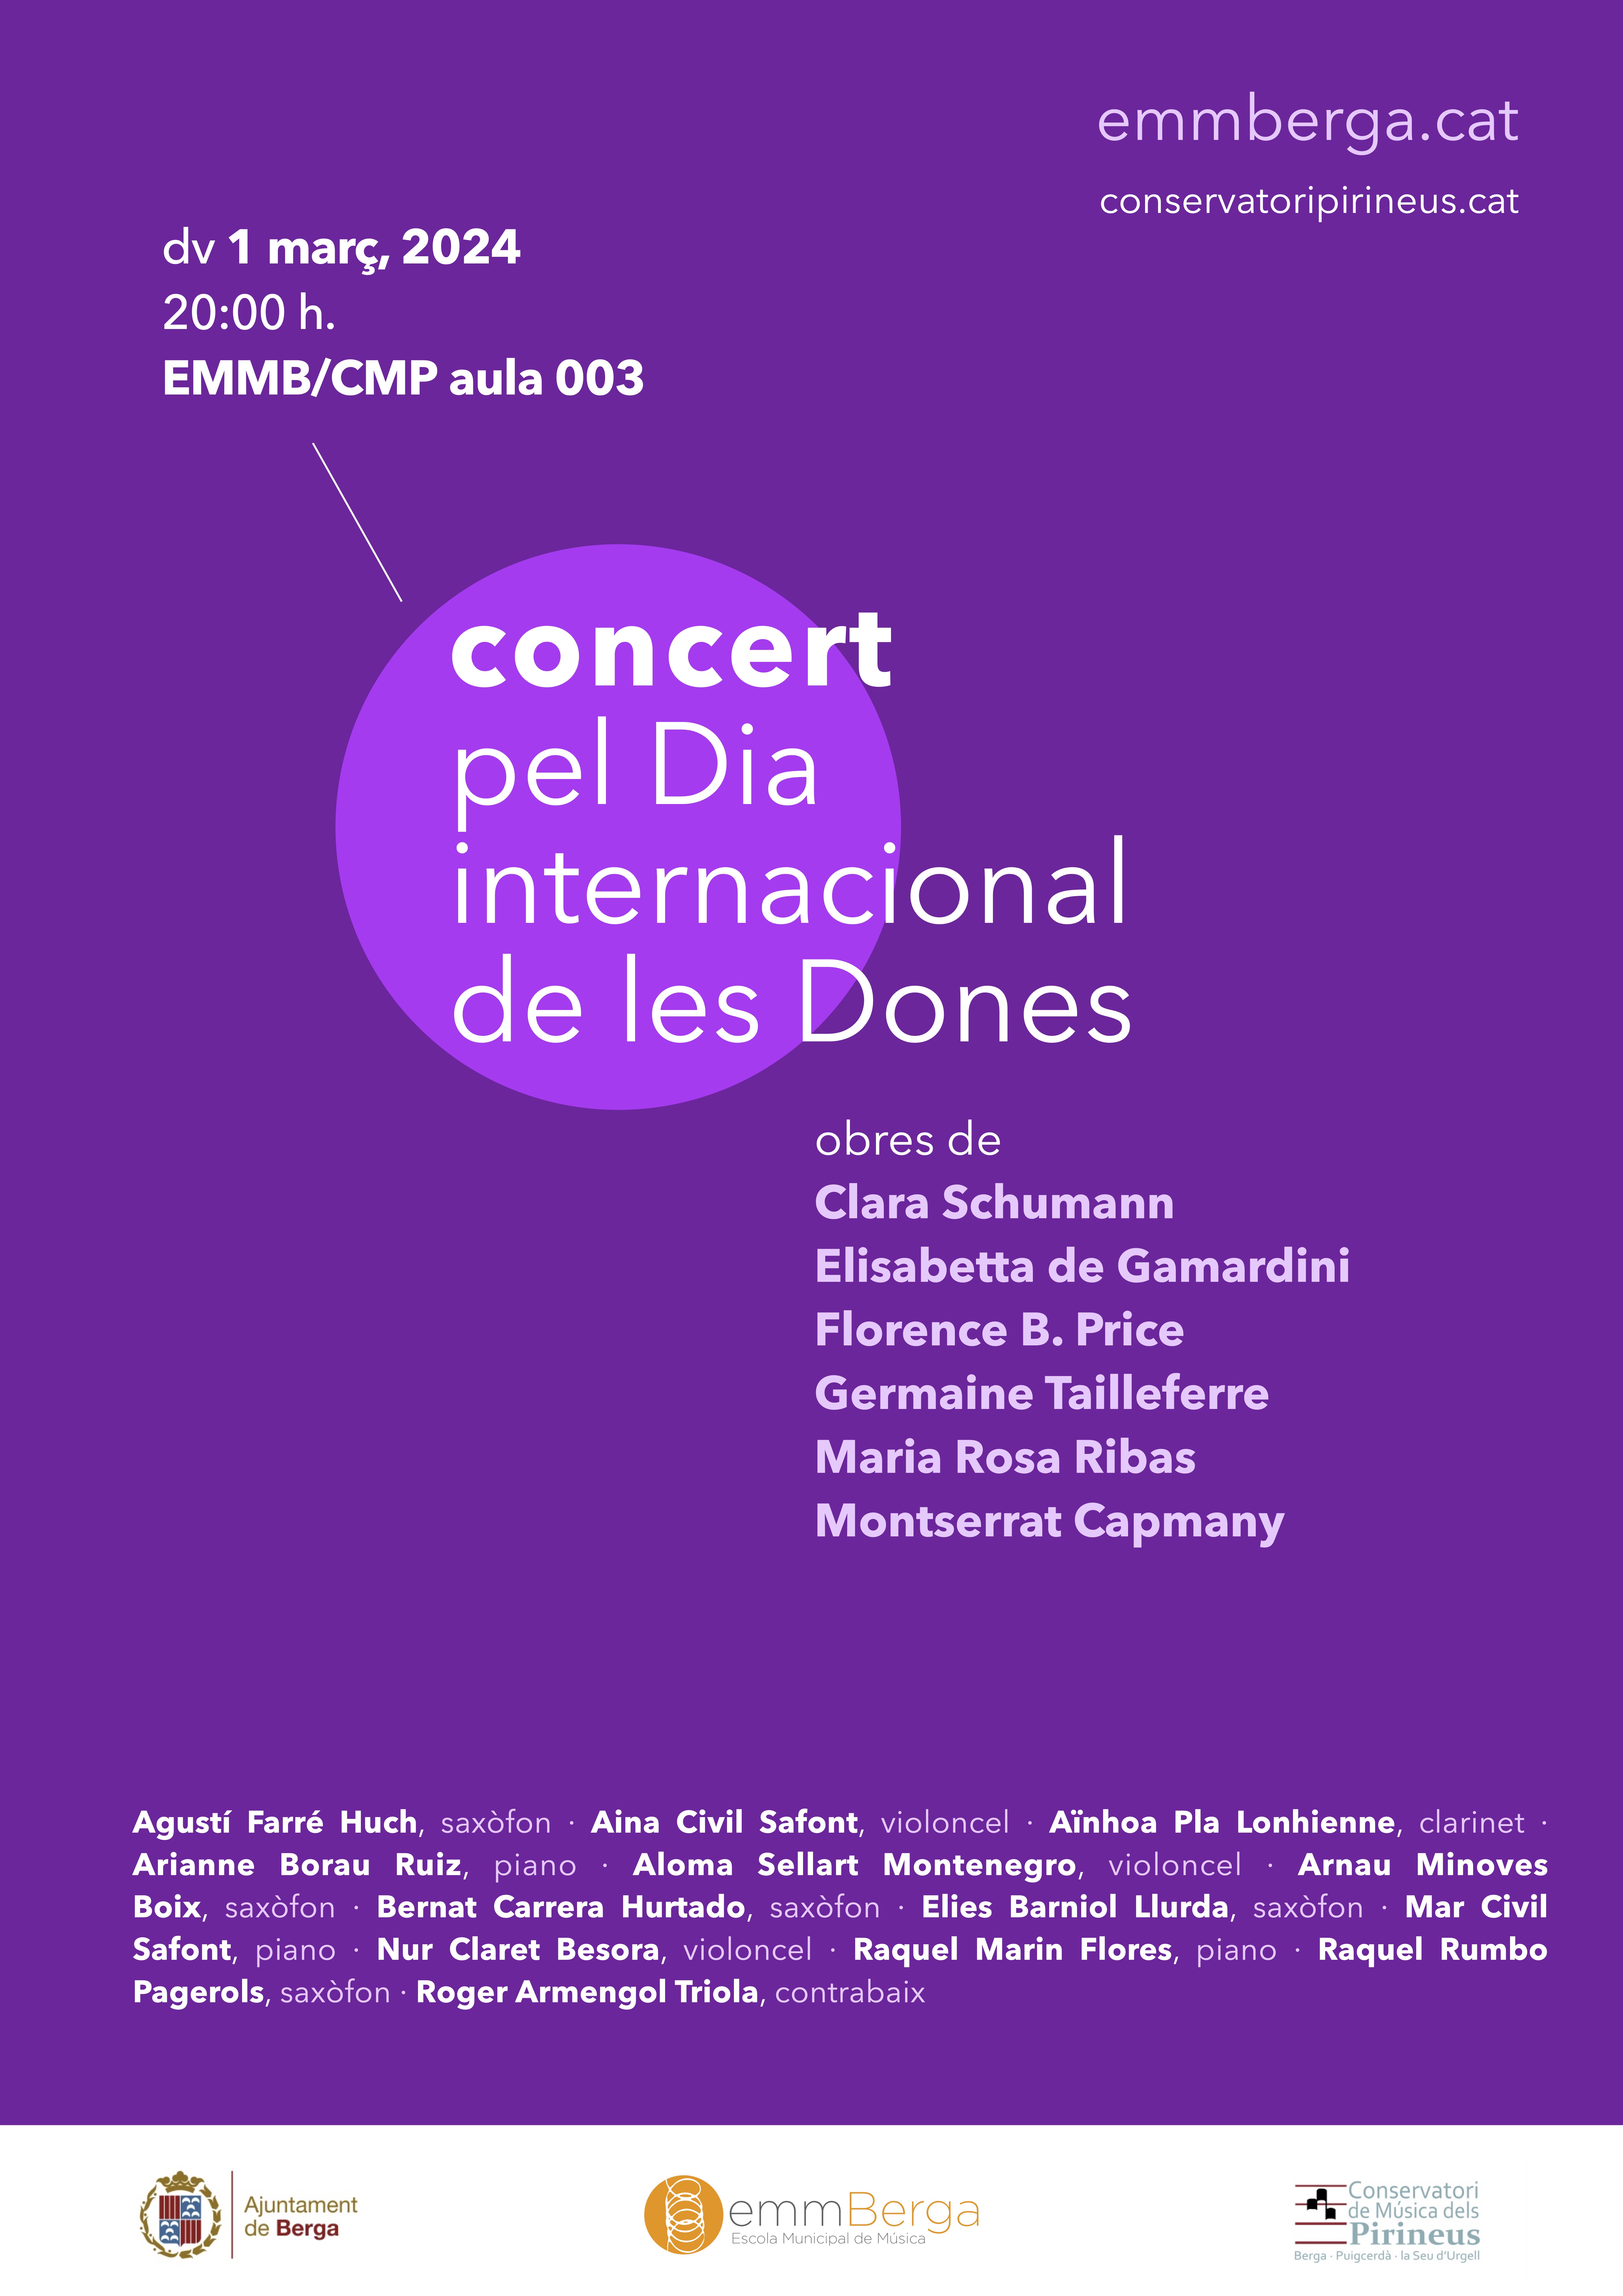 Concert del 8M amb l'EMMBerga i el Conservatori dels Pirineus 